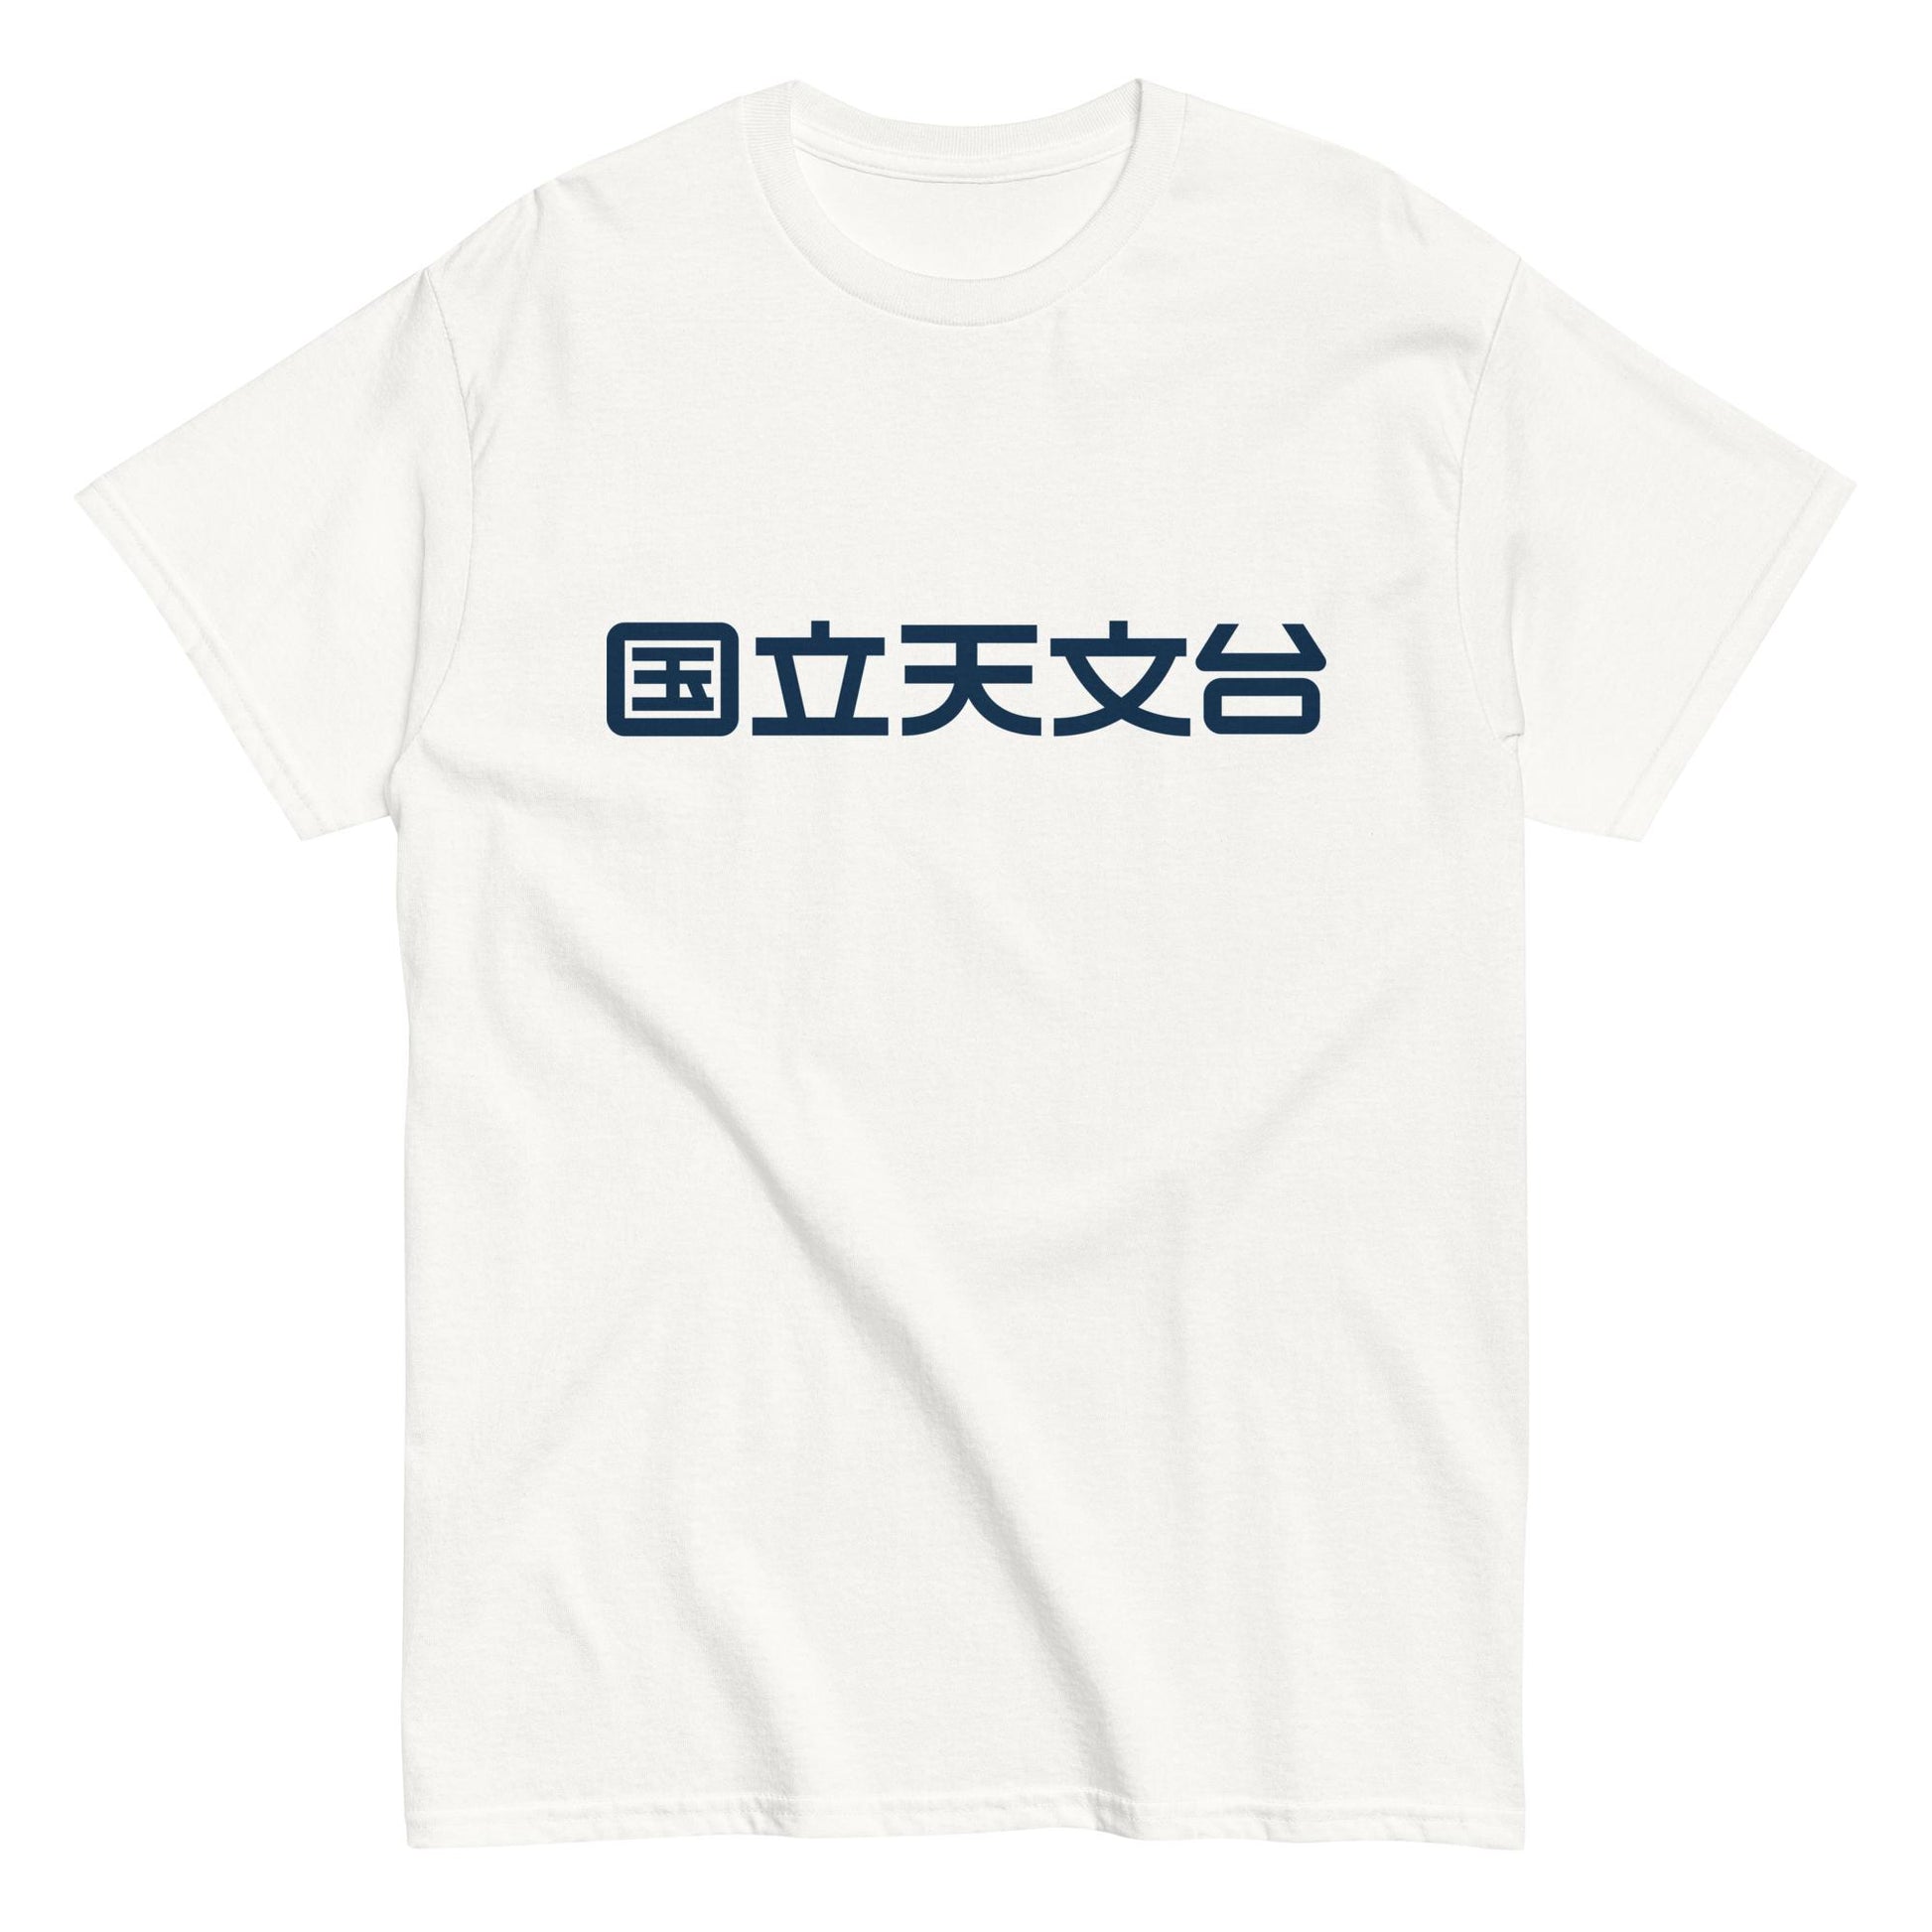 国立天文台 NAOJ漢字 ロゴマーク ヘビーウェイト Tシャツ ホワイト S 00